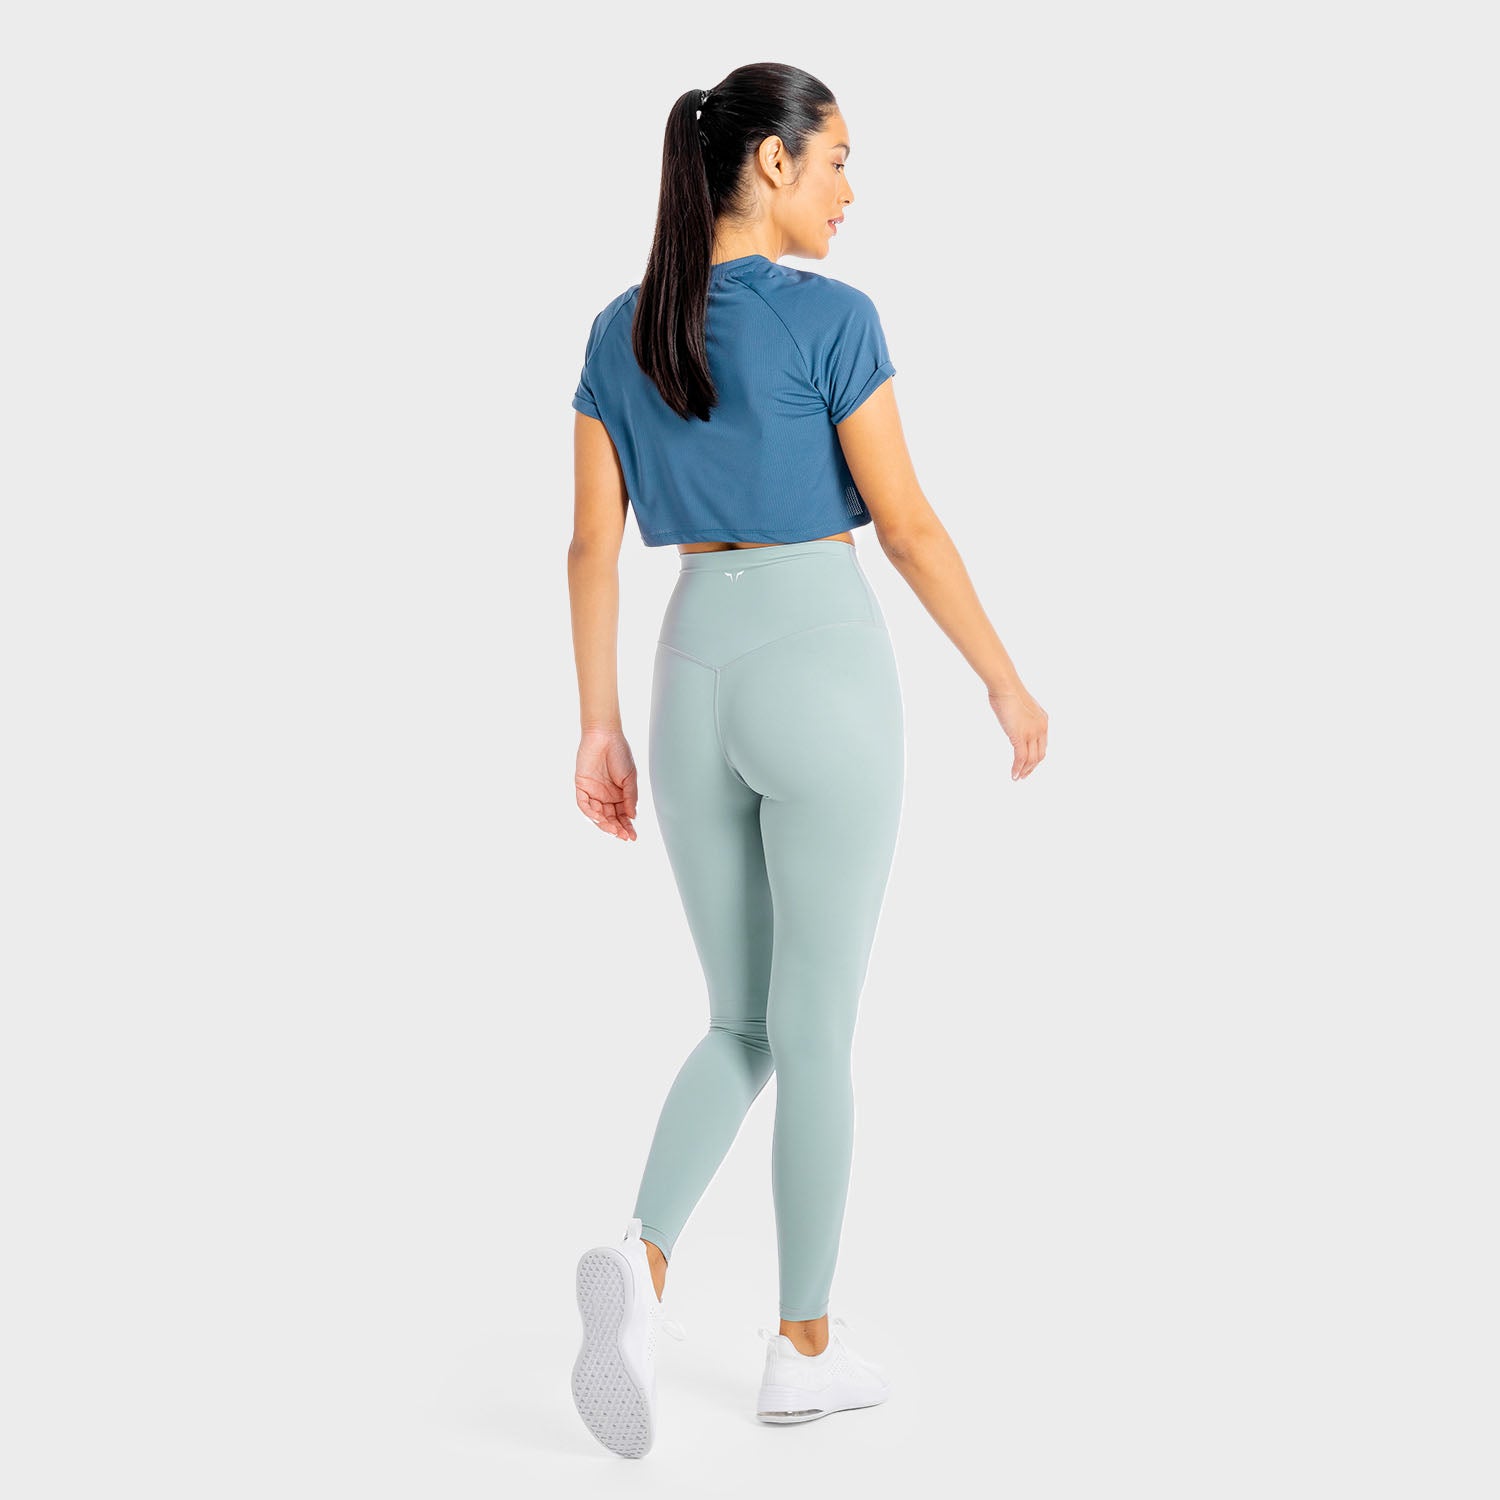 squatwolf-workout-clothes-core-agile-leggings-blue-gym-leggings-for-women